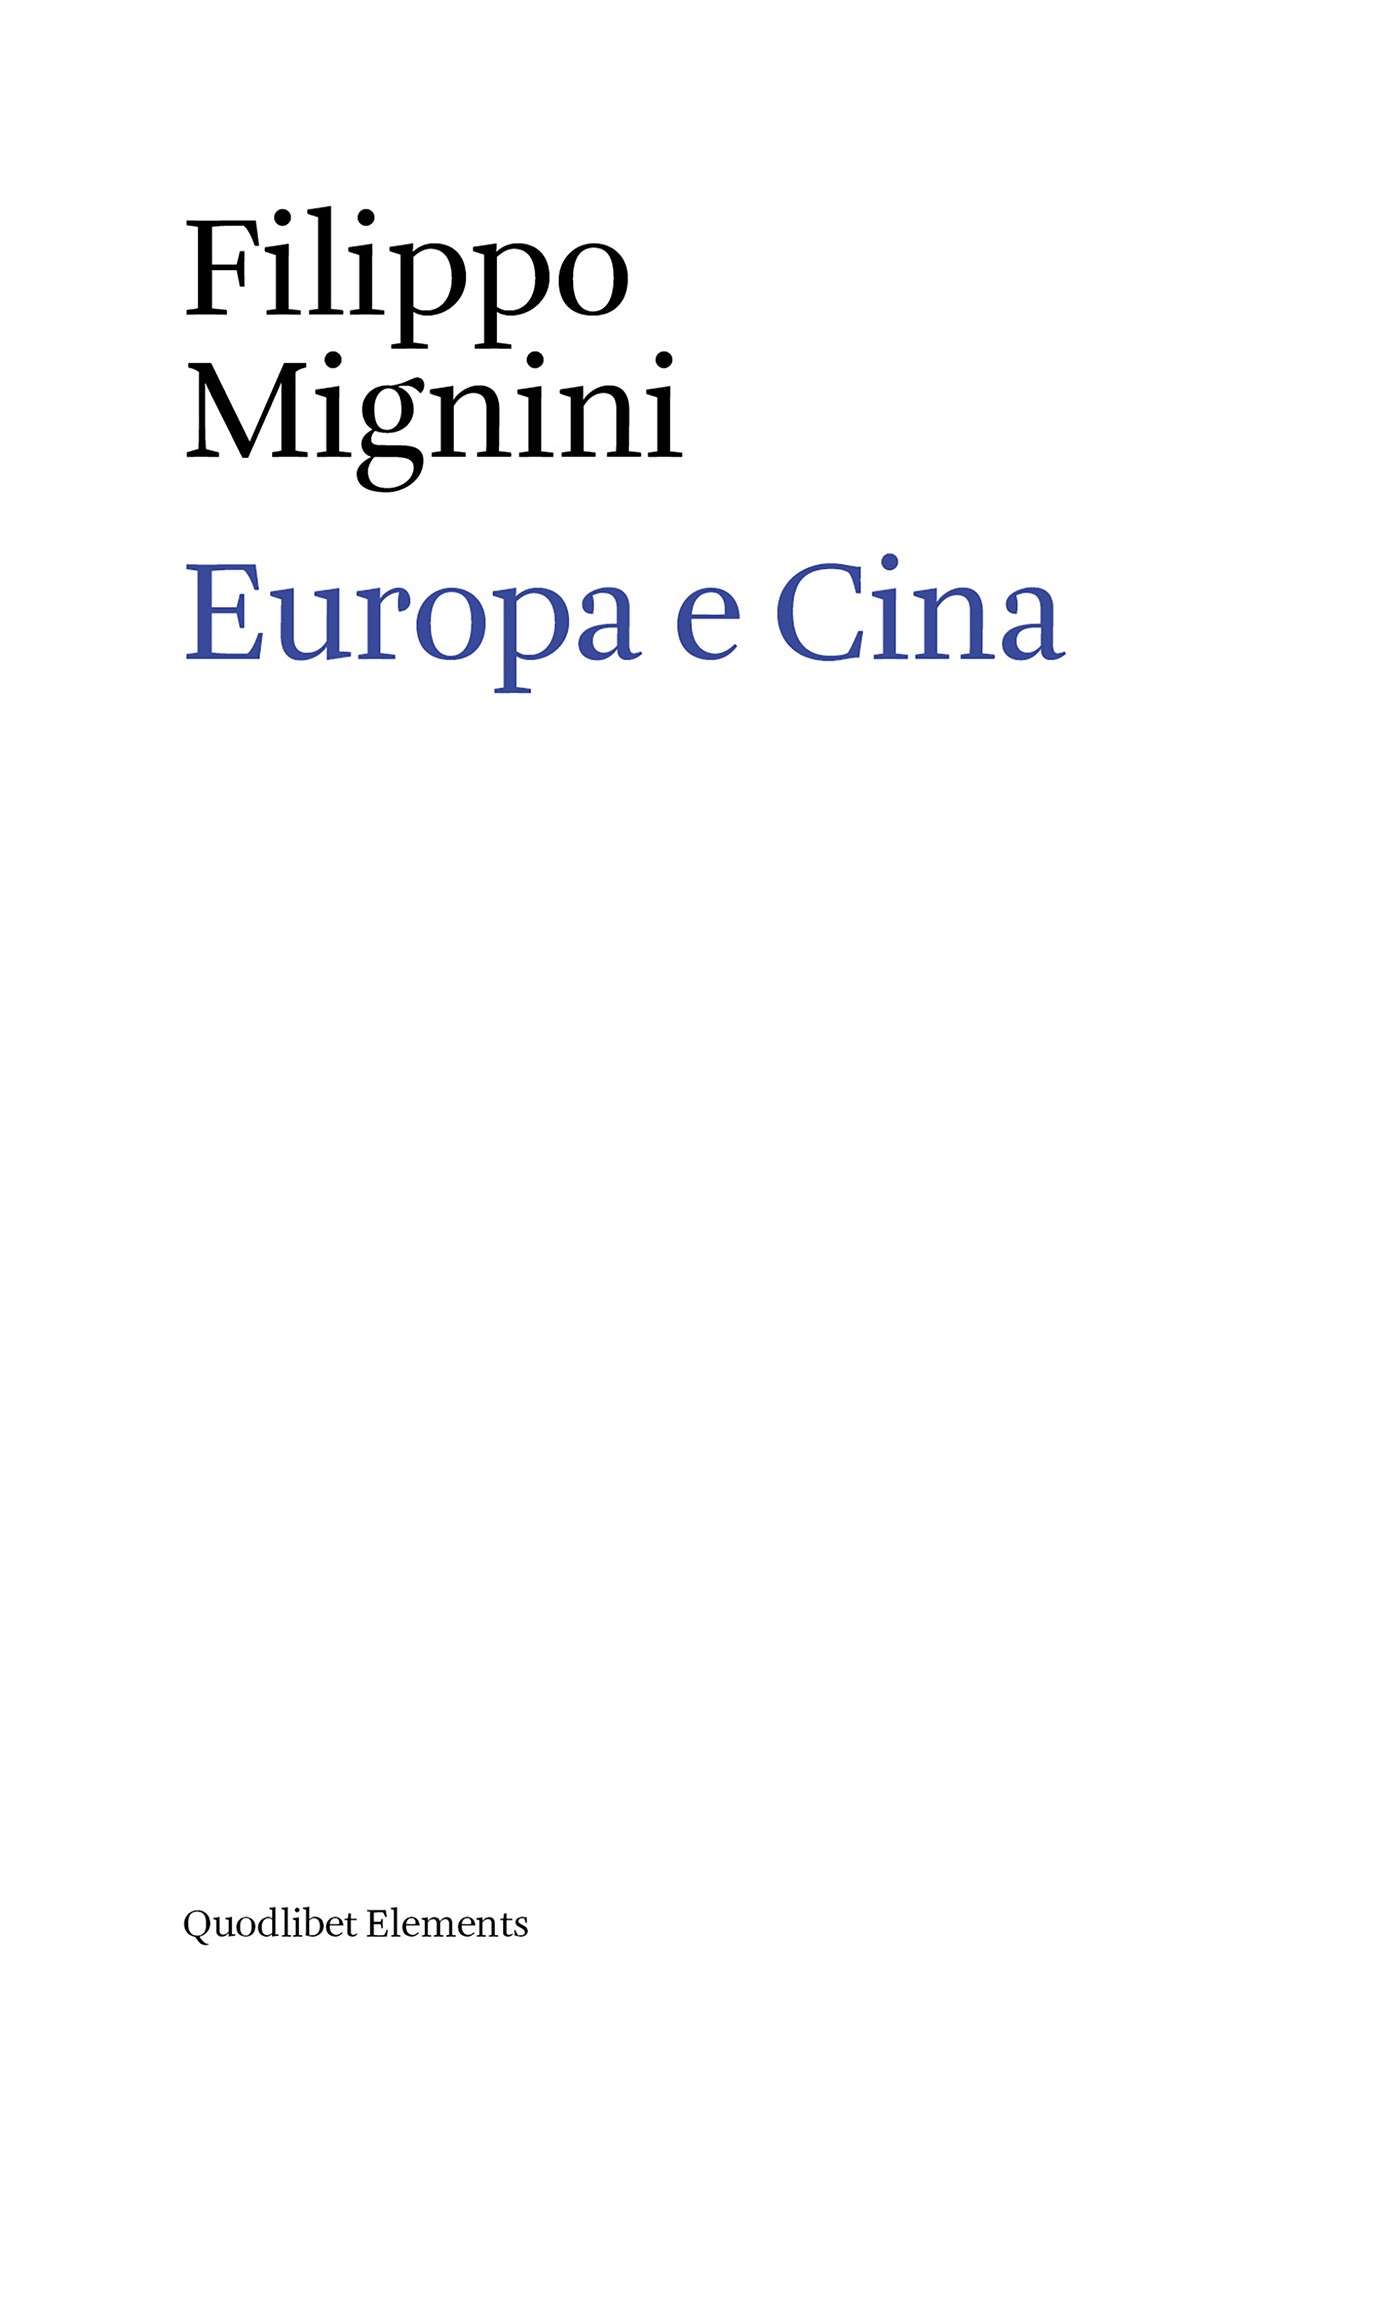 Europa e Cina - Librerie.coop